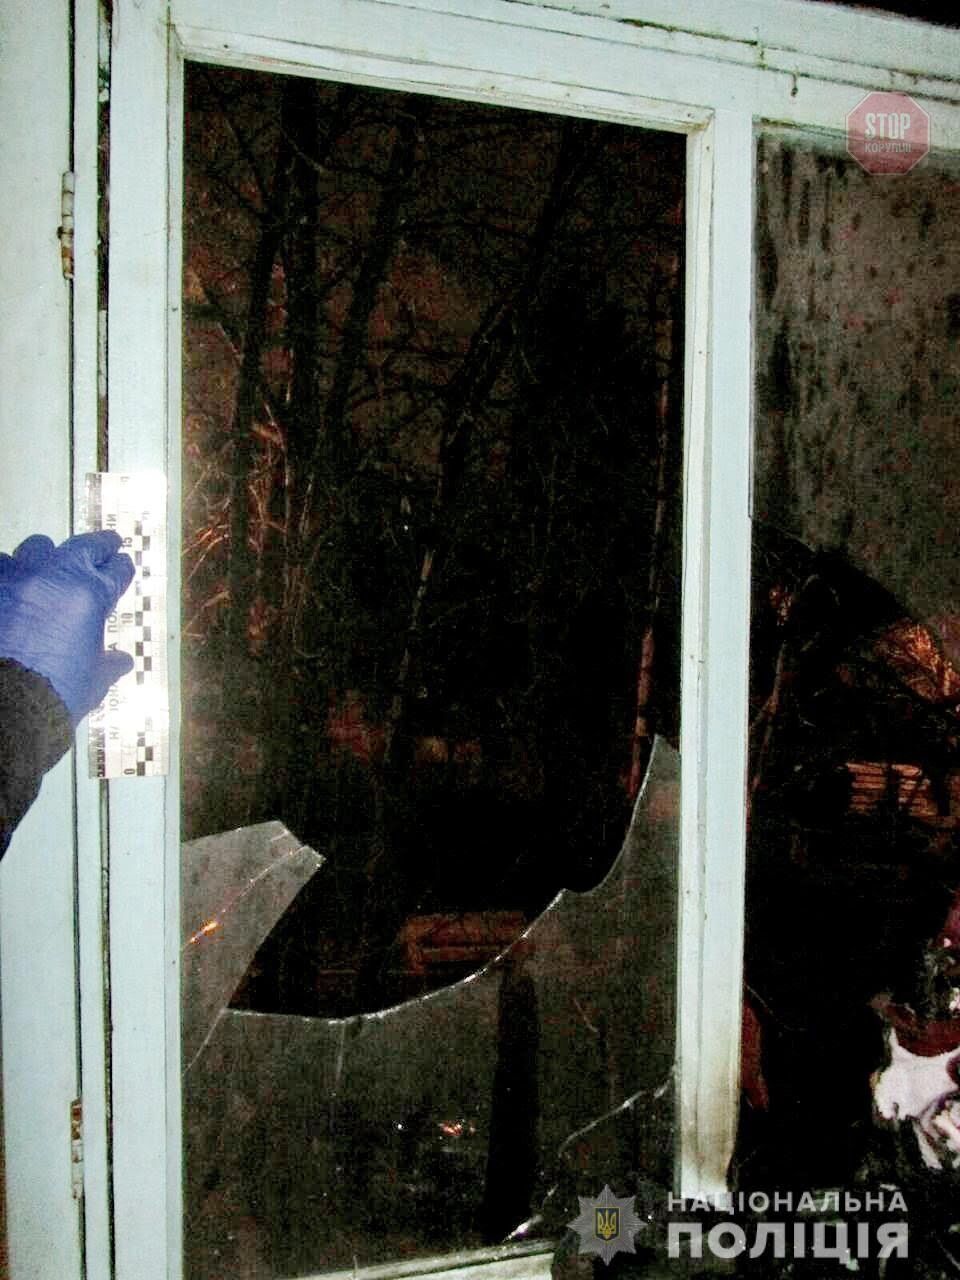 Кинули на балкон квартири пляшку із запальною рідиною, є постраждалий: у Харкові шукають винних (фото)